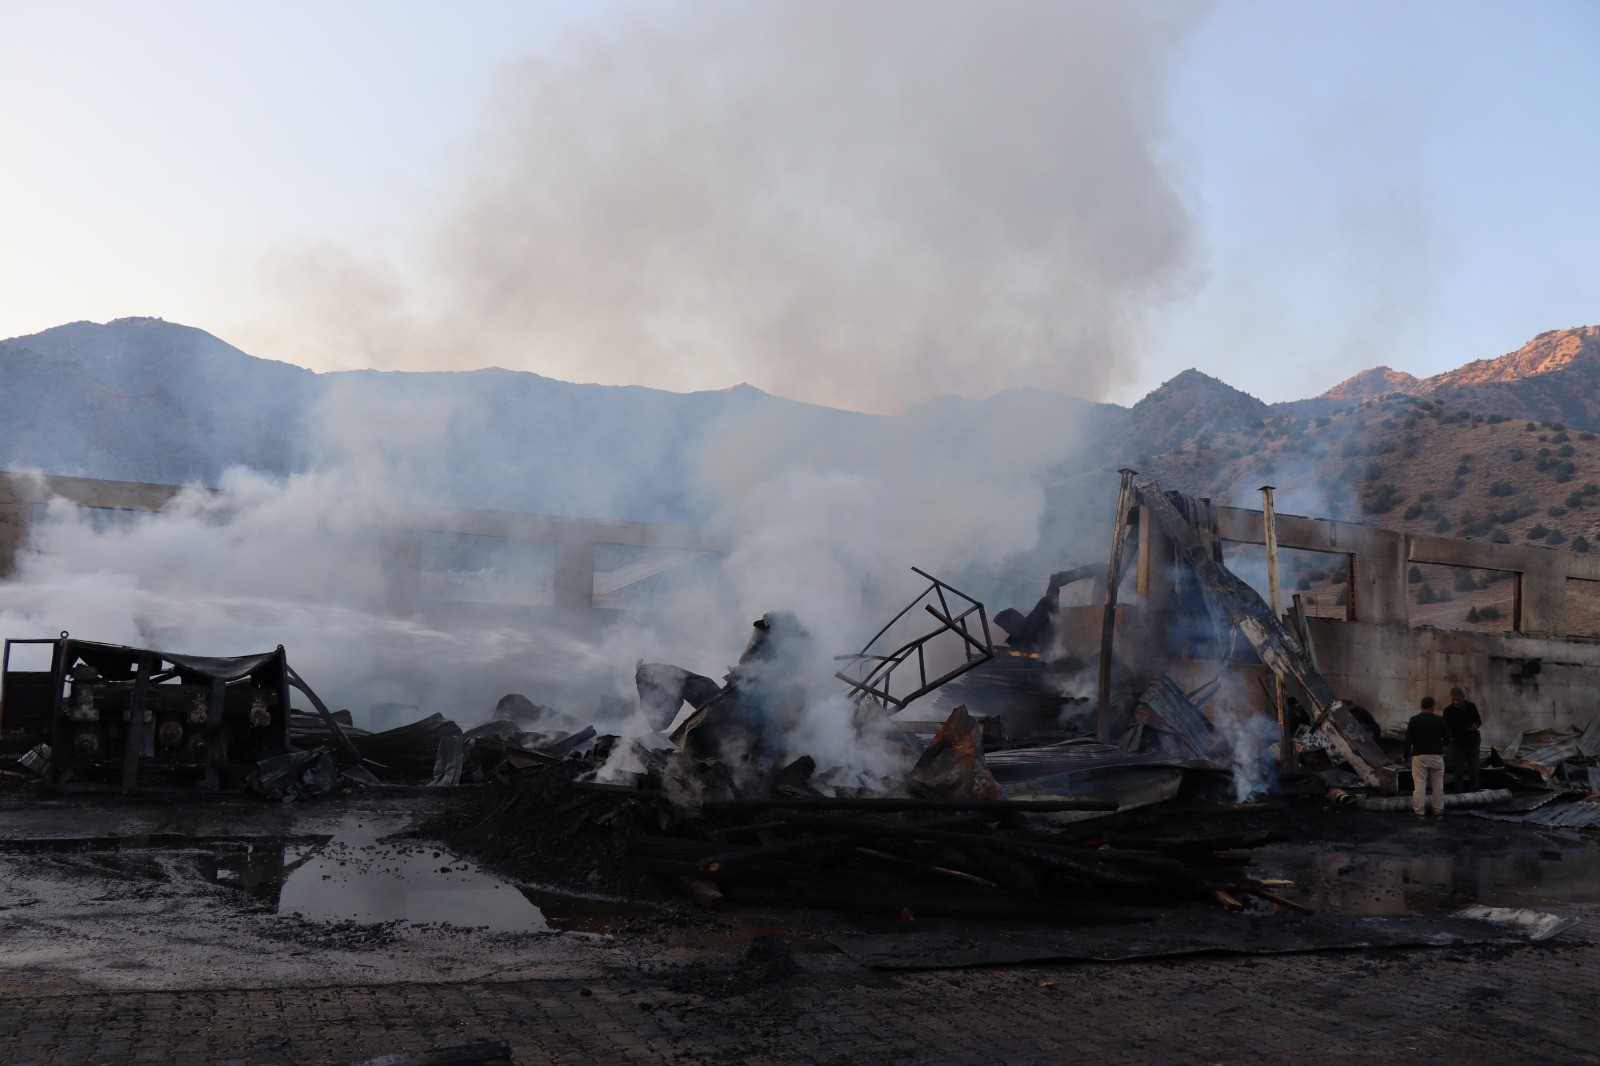 Oltu'da kereste fabrikası yandı, zarar 50 milyon TL